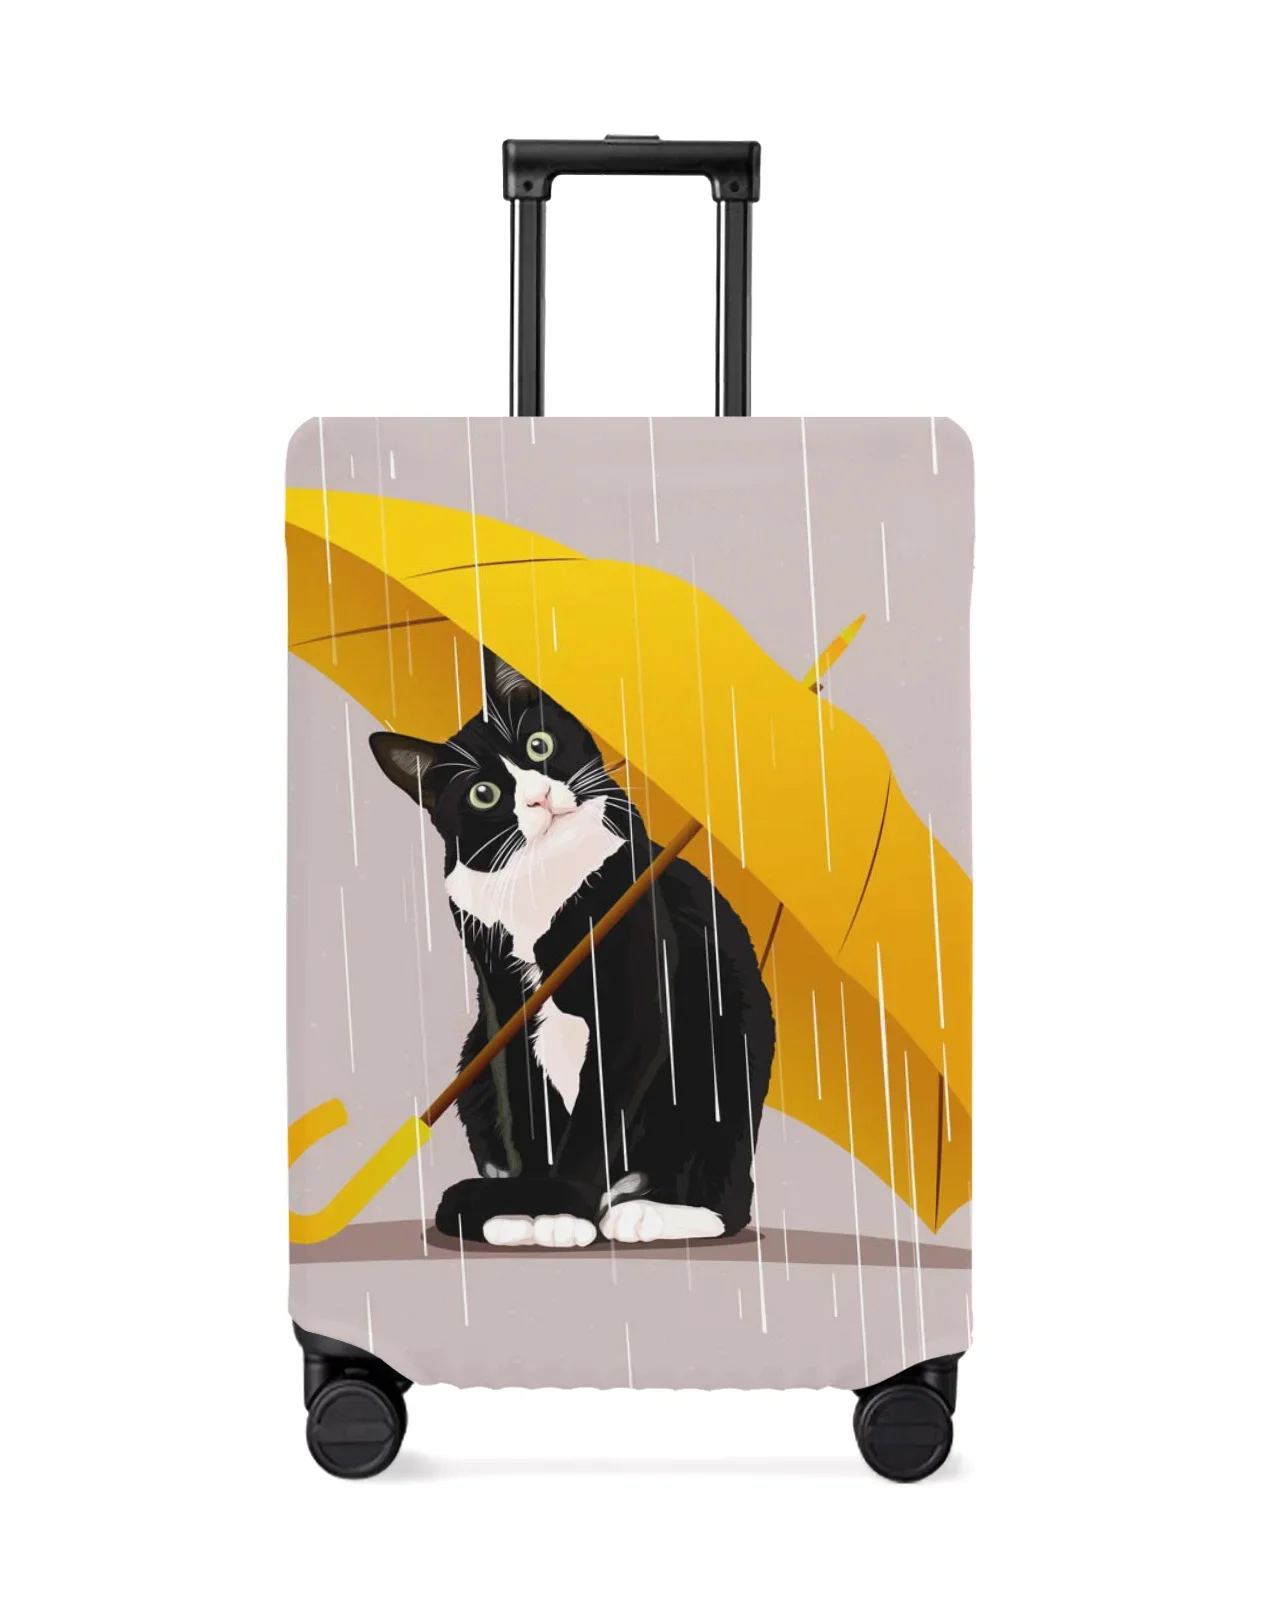 juste-de-bagage-de-voyage-parapluie-chat-jaune-housse-de-bagage-elastique-pour-valise-18-32-pouces-housse-anti-poussiere-accessoires-de-voyage